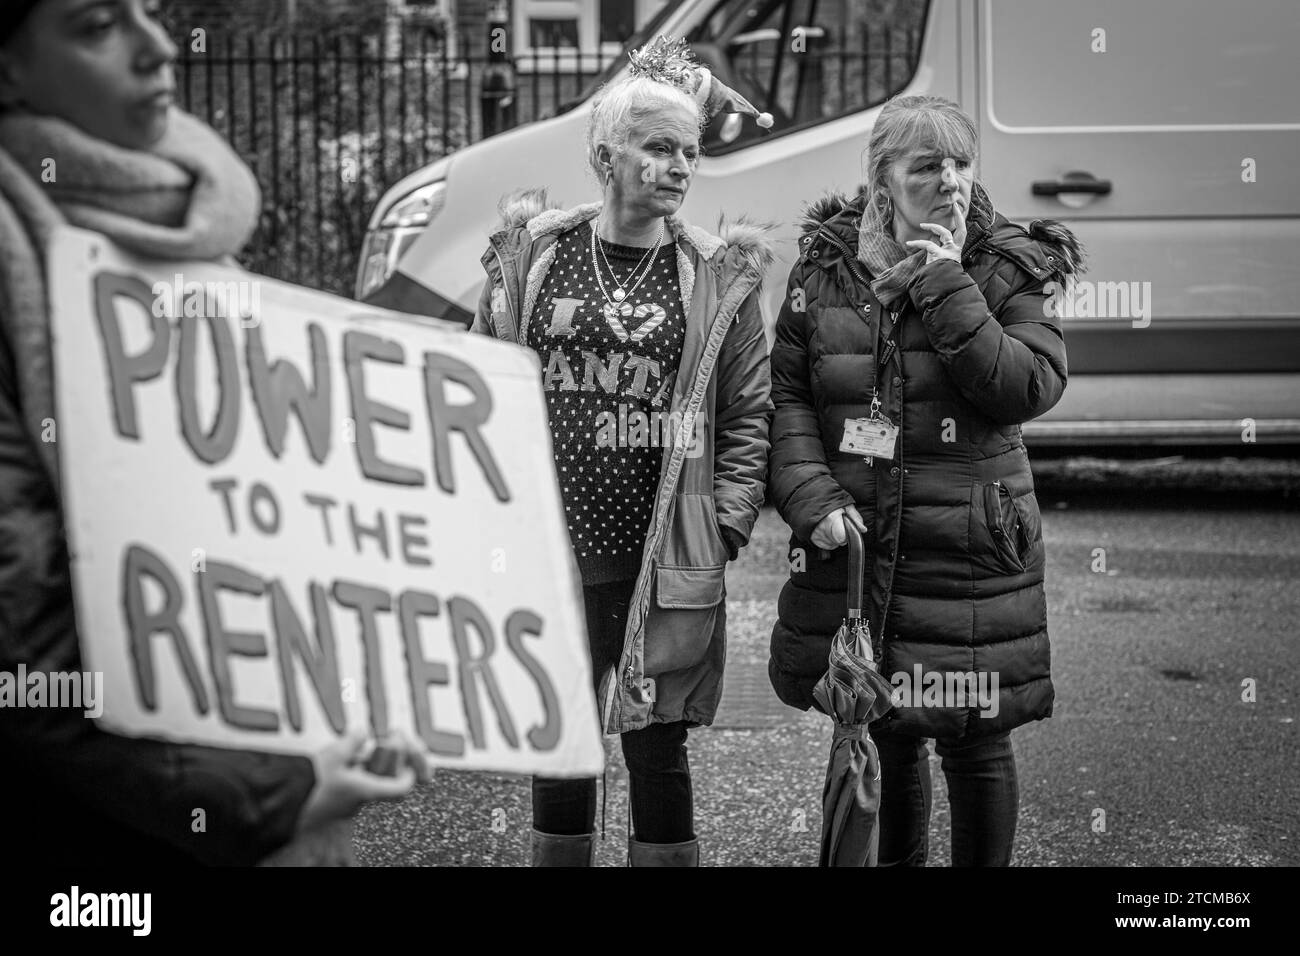 Protestez contre le pouvoir aux locataires à Londres, Royaume-Uni. Banque D'Images